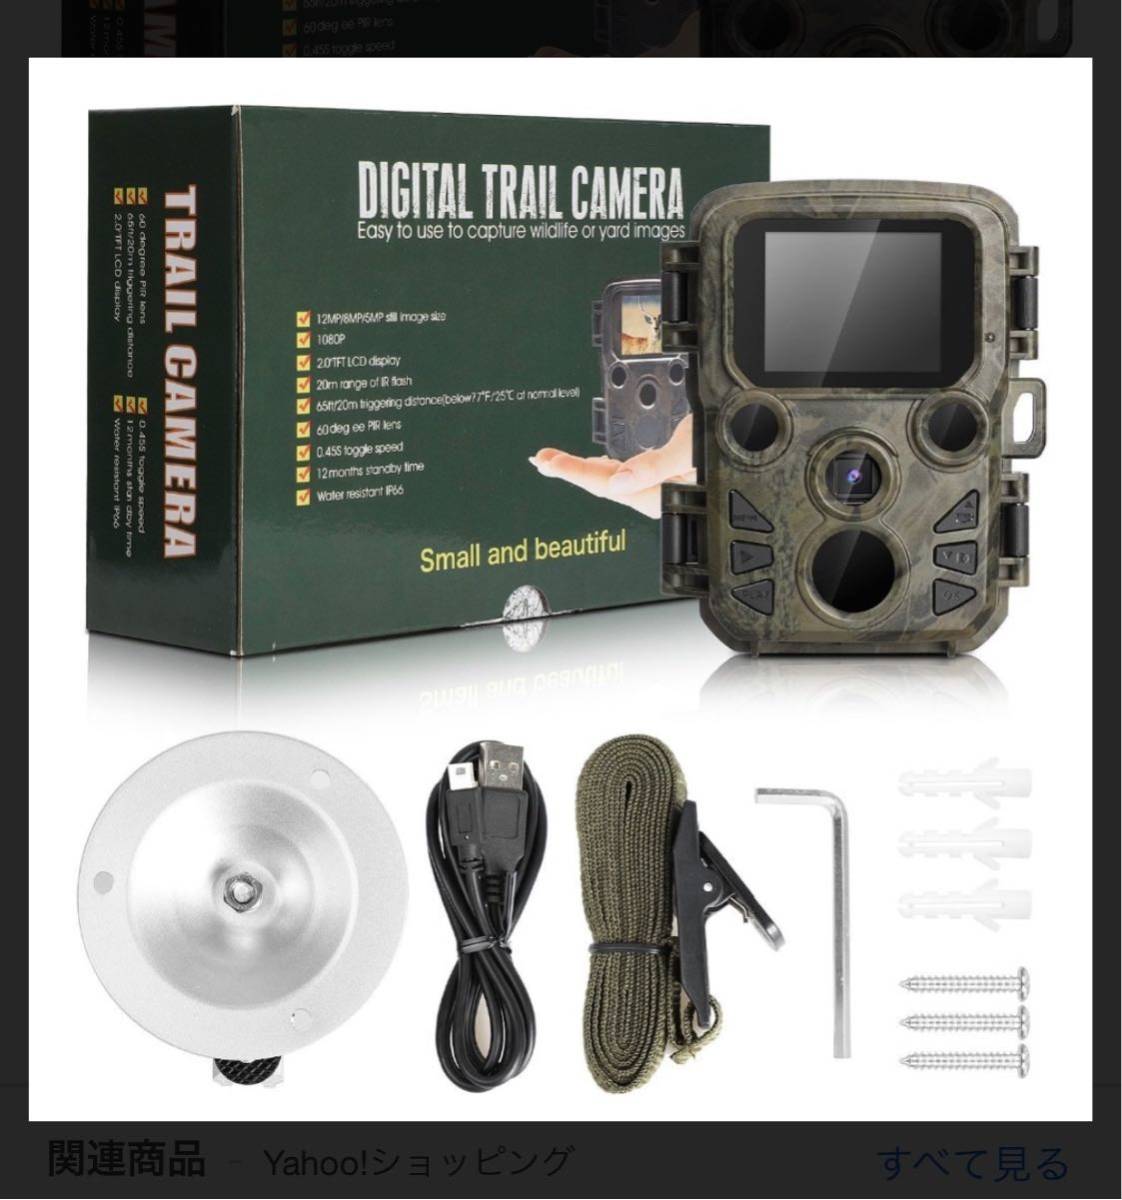  предотвращение преступления Trail камера маленький размер наружный пыленепроницаемый человек чувство сенсор вечер соответствует тип аккумулятора новый товар нераспечатанный товар 